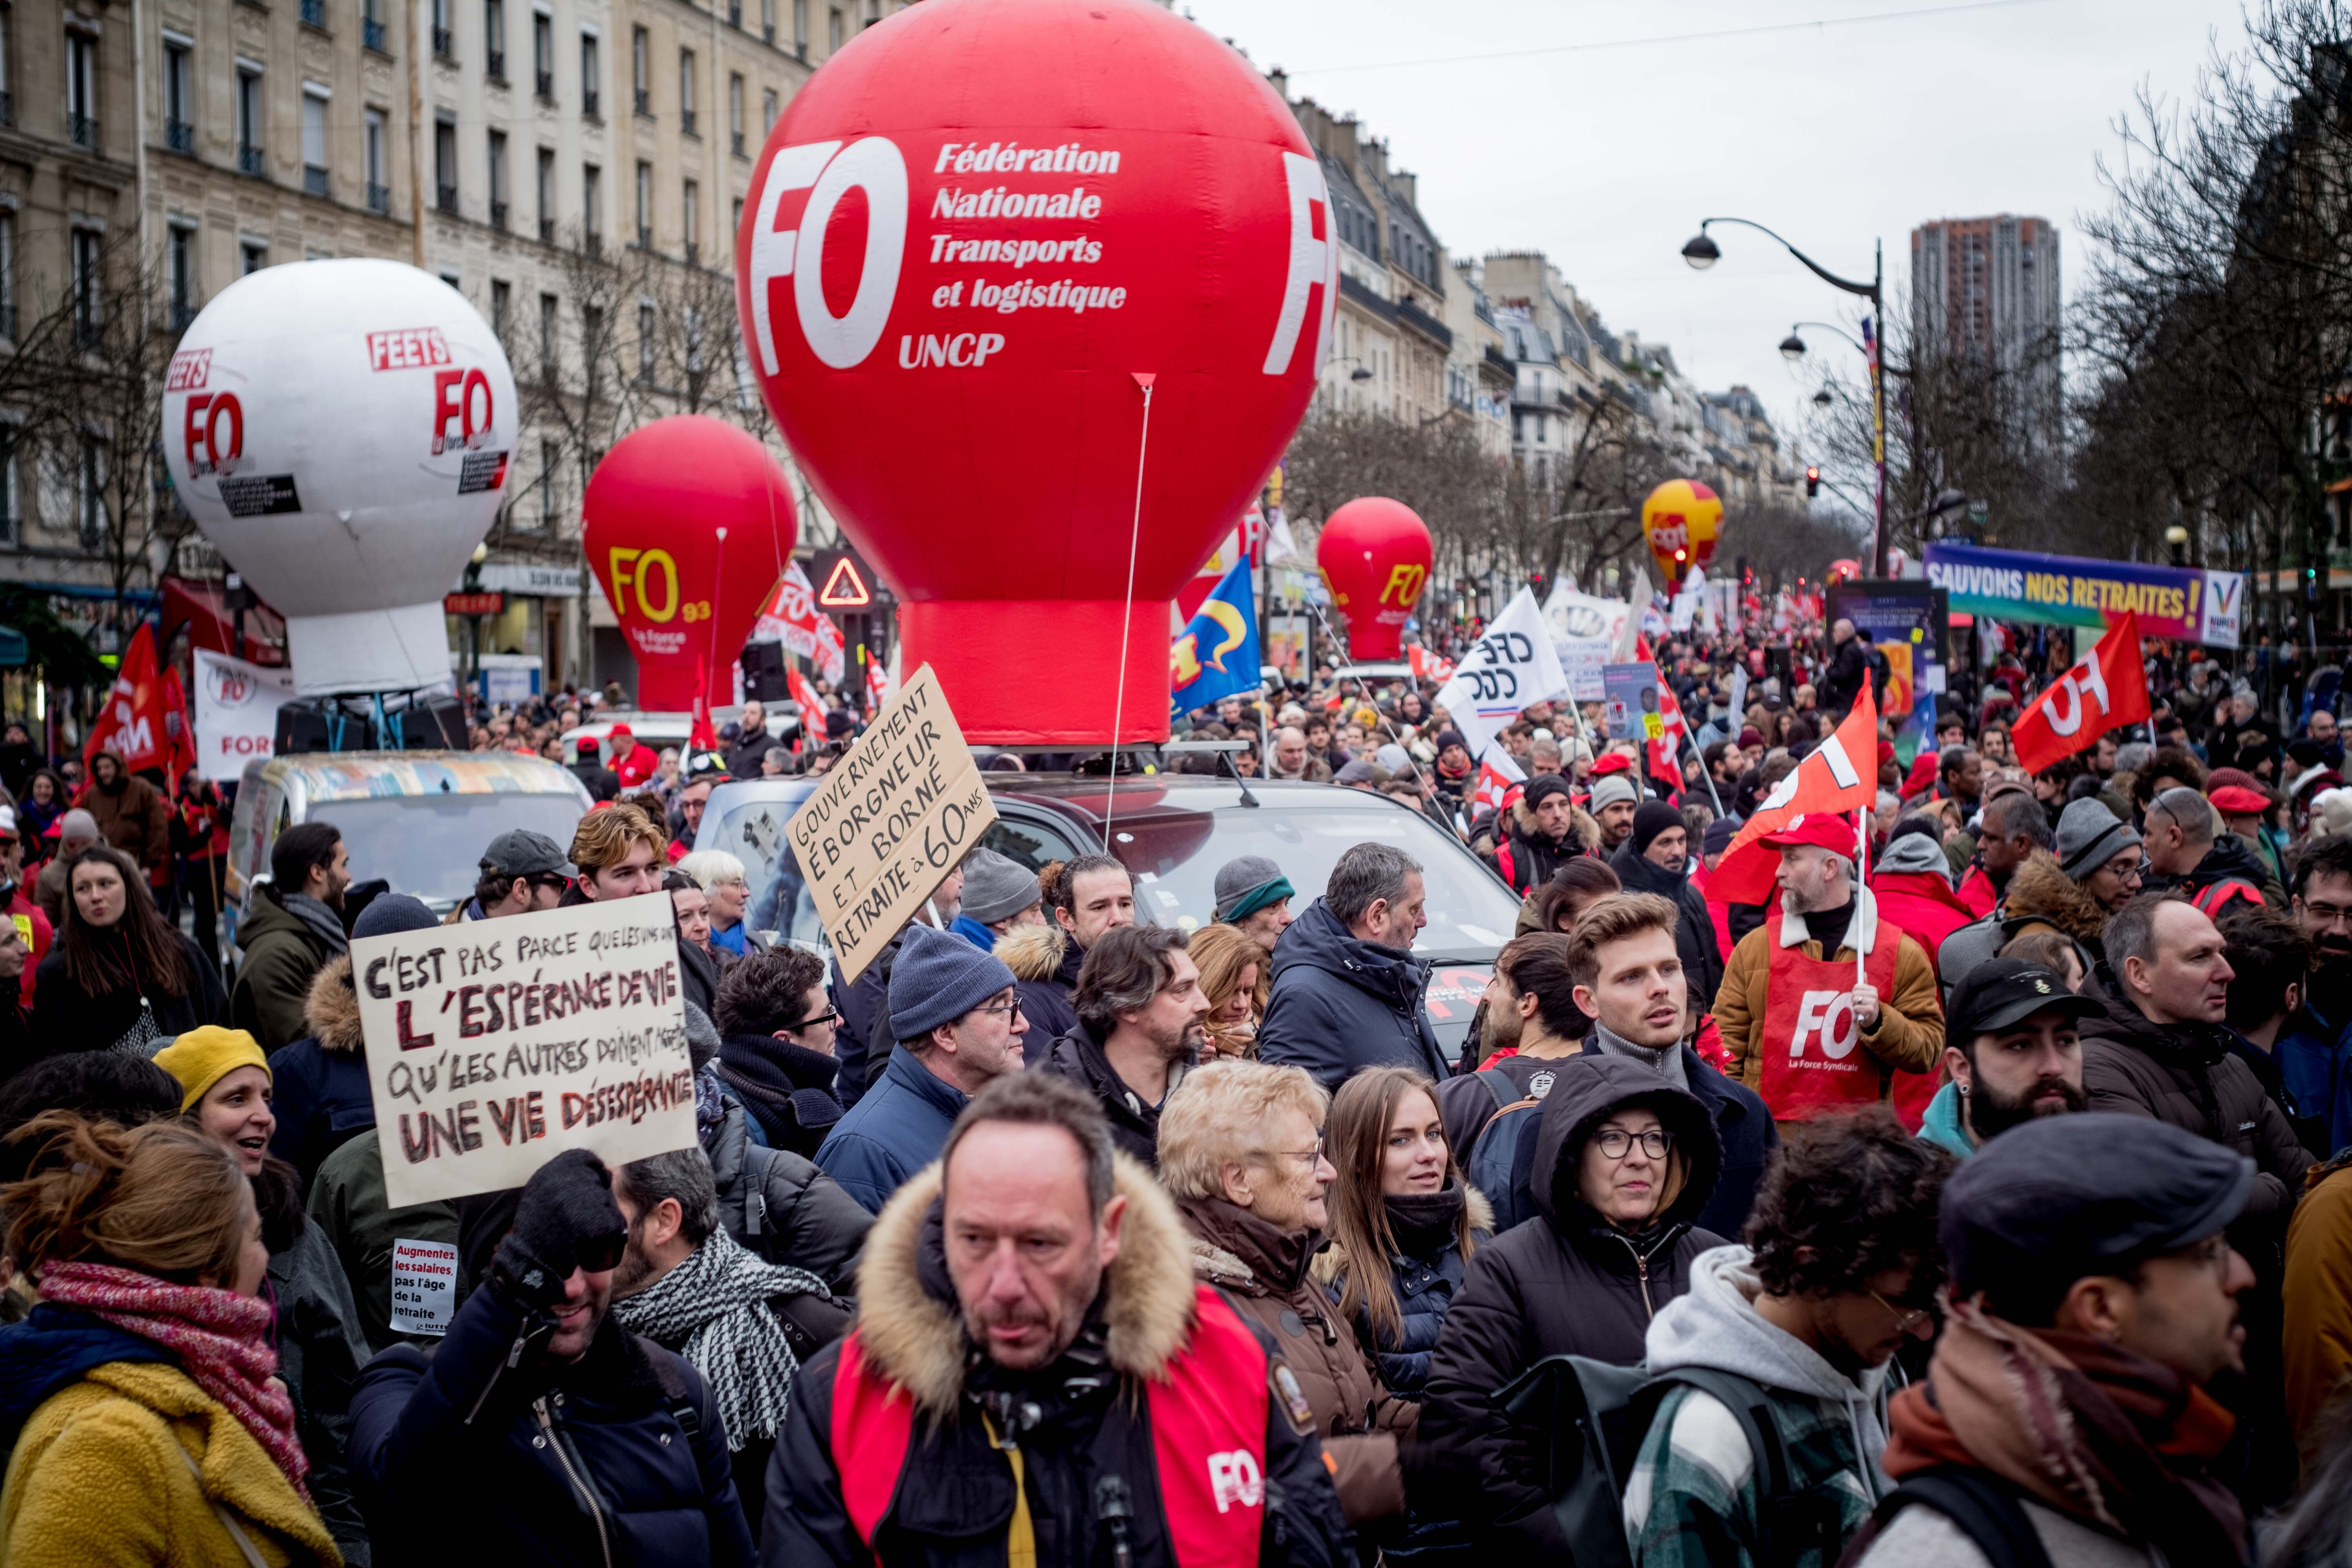 se convocará a los trabajadores y a las trabajadoras, a los jóvenes y a los jubilados a que endurezcan el movimiento paralizando todos los sectores en Francia el próximo 7 de marzo